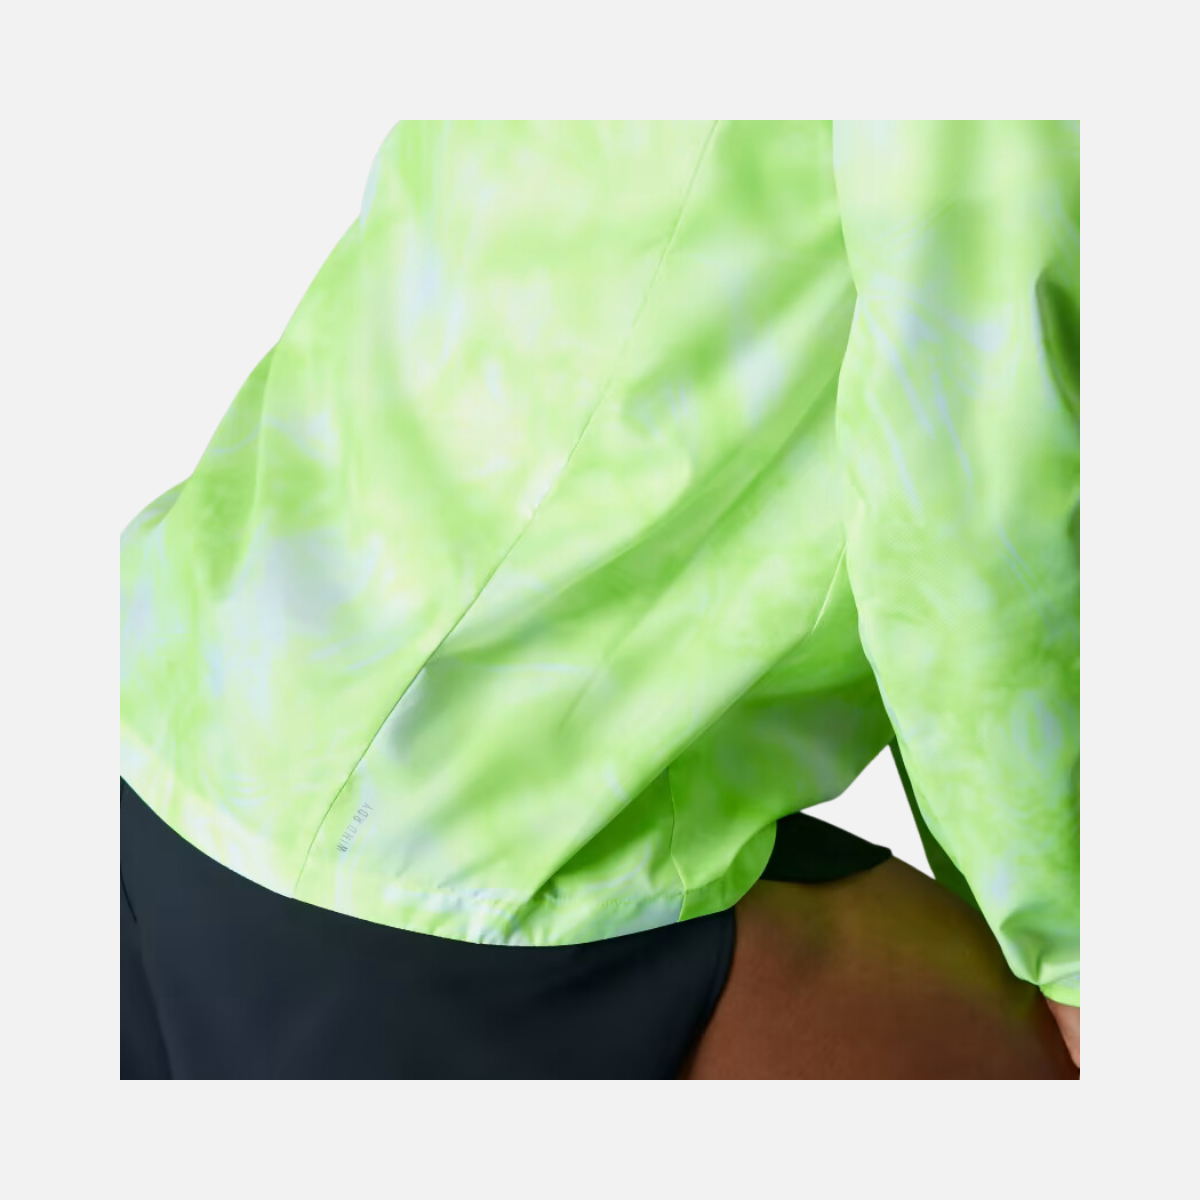 Adidas Own The Run Allover Print Men's Running Jacket - White/Lucid Lemon